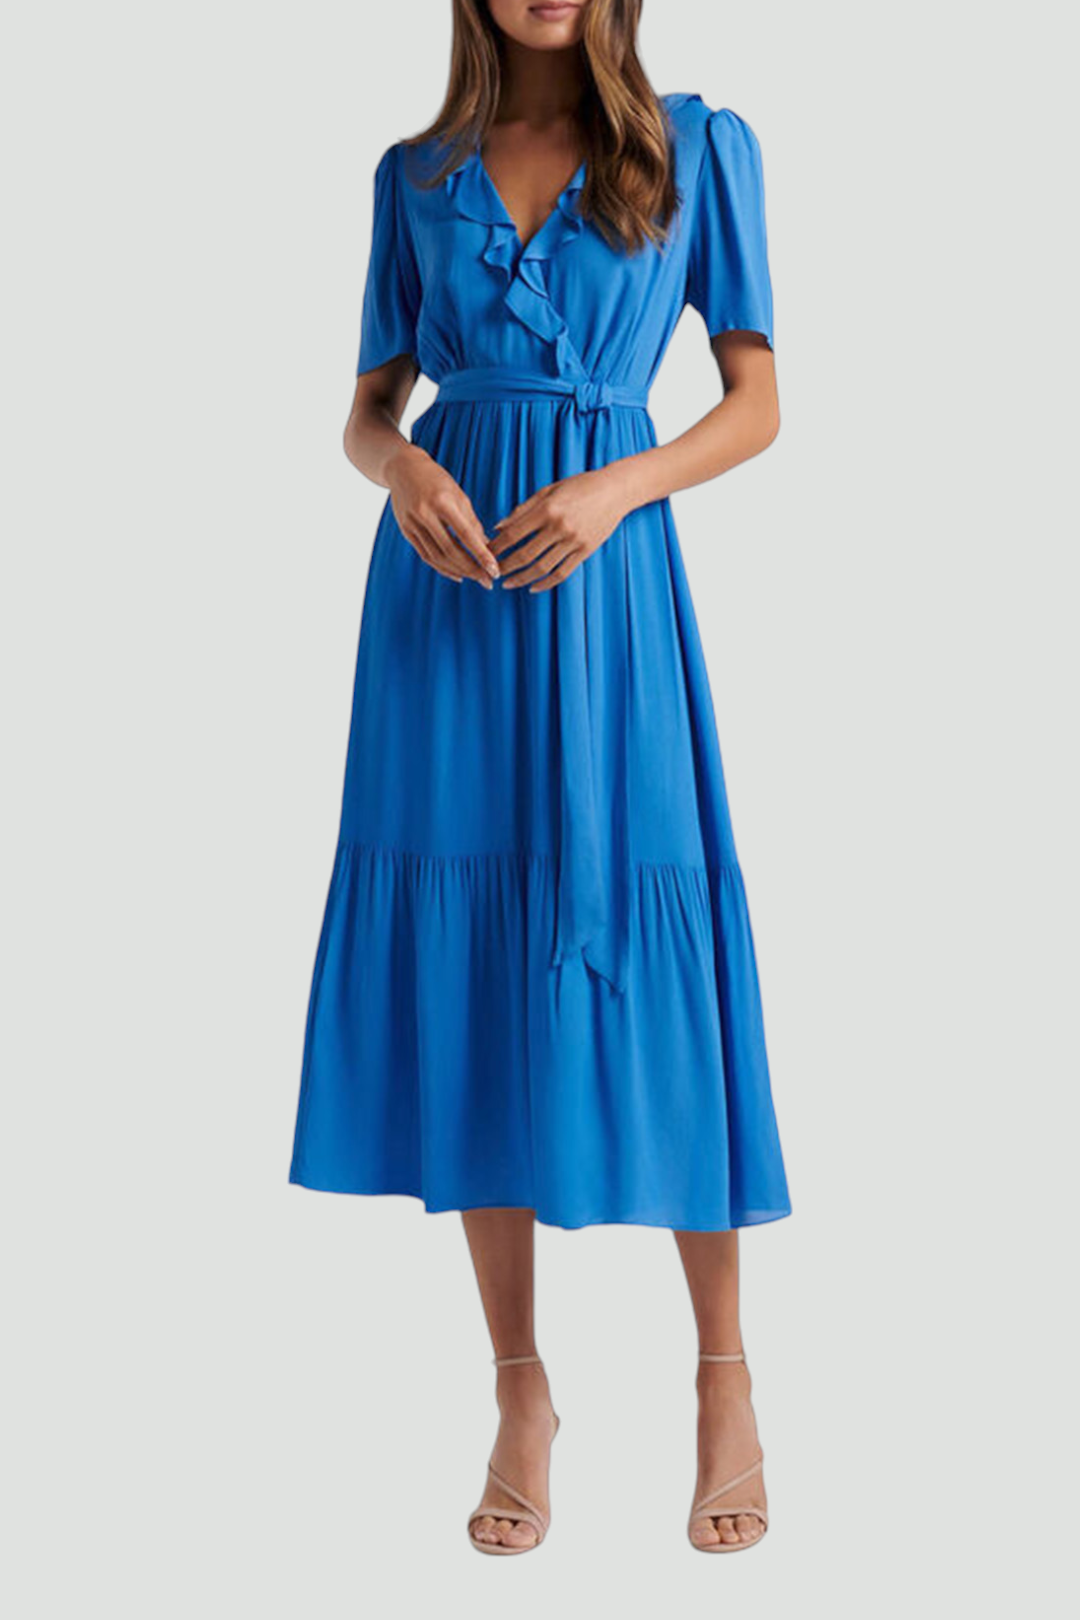 Forever New Tobi Ruffle Midi Dress in Blue